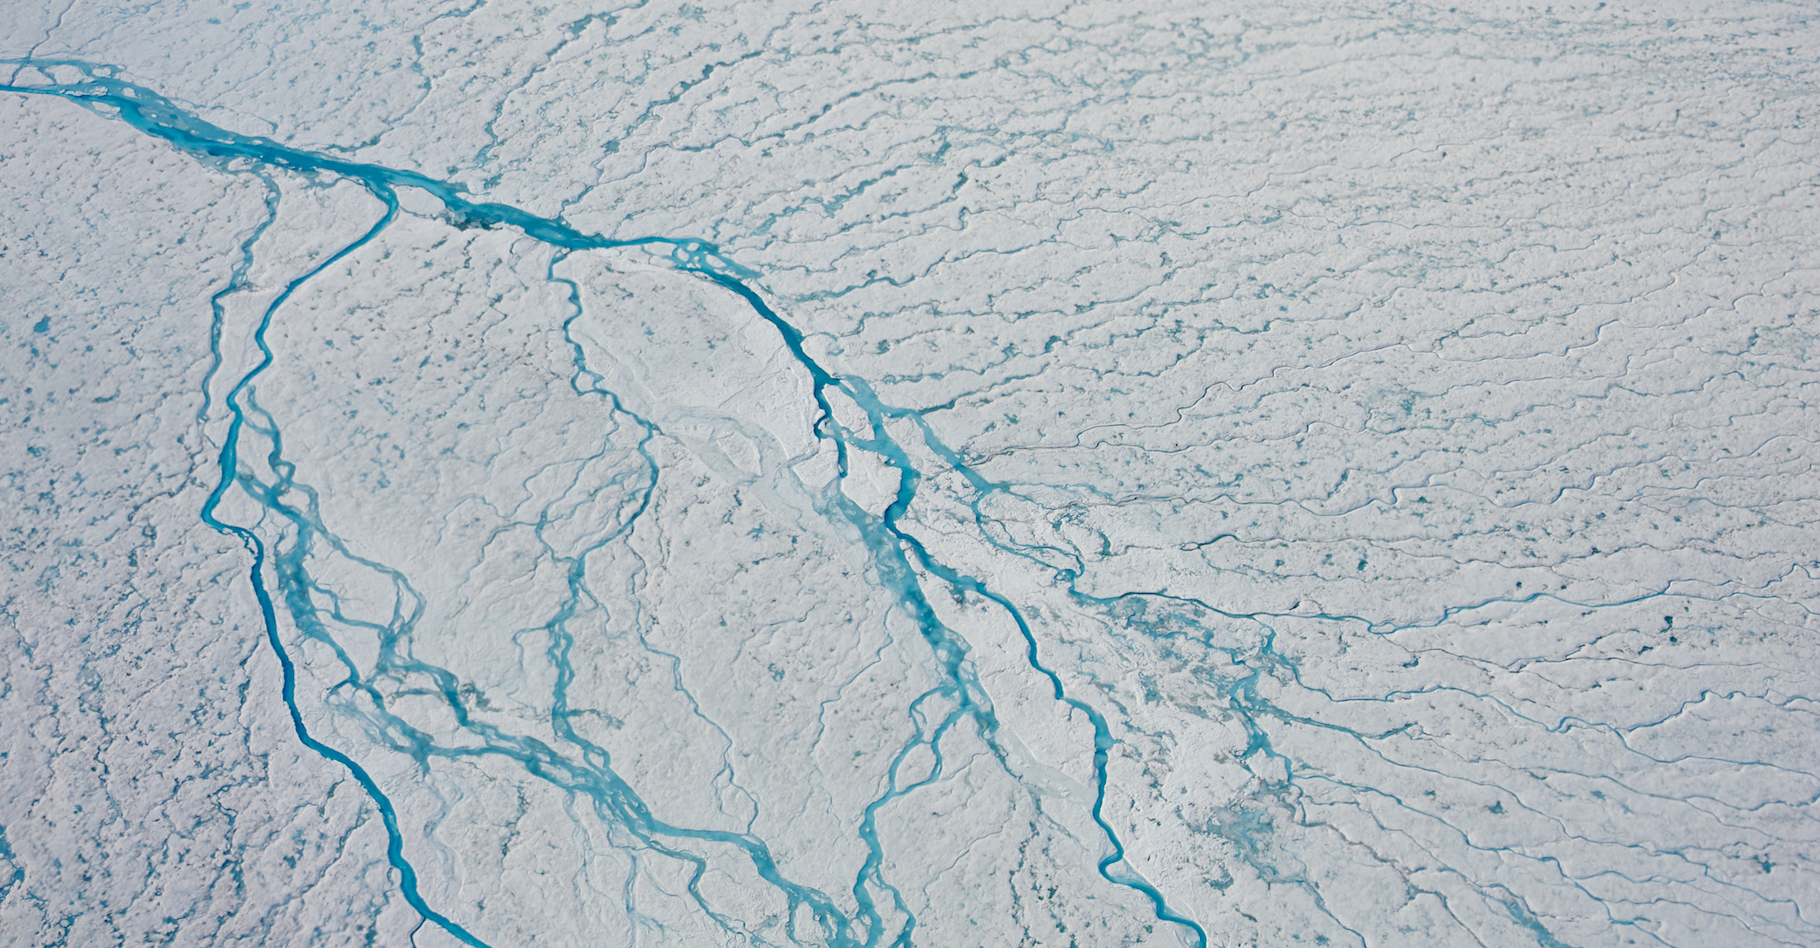 Avec les températures qui montent, les eaux de ruissellement sont de plus en plus nombreuses au centre de la calotte glaciaire du Groenland. © Sepp Kipfstuhl, Alfred-Wegener Institut